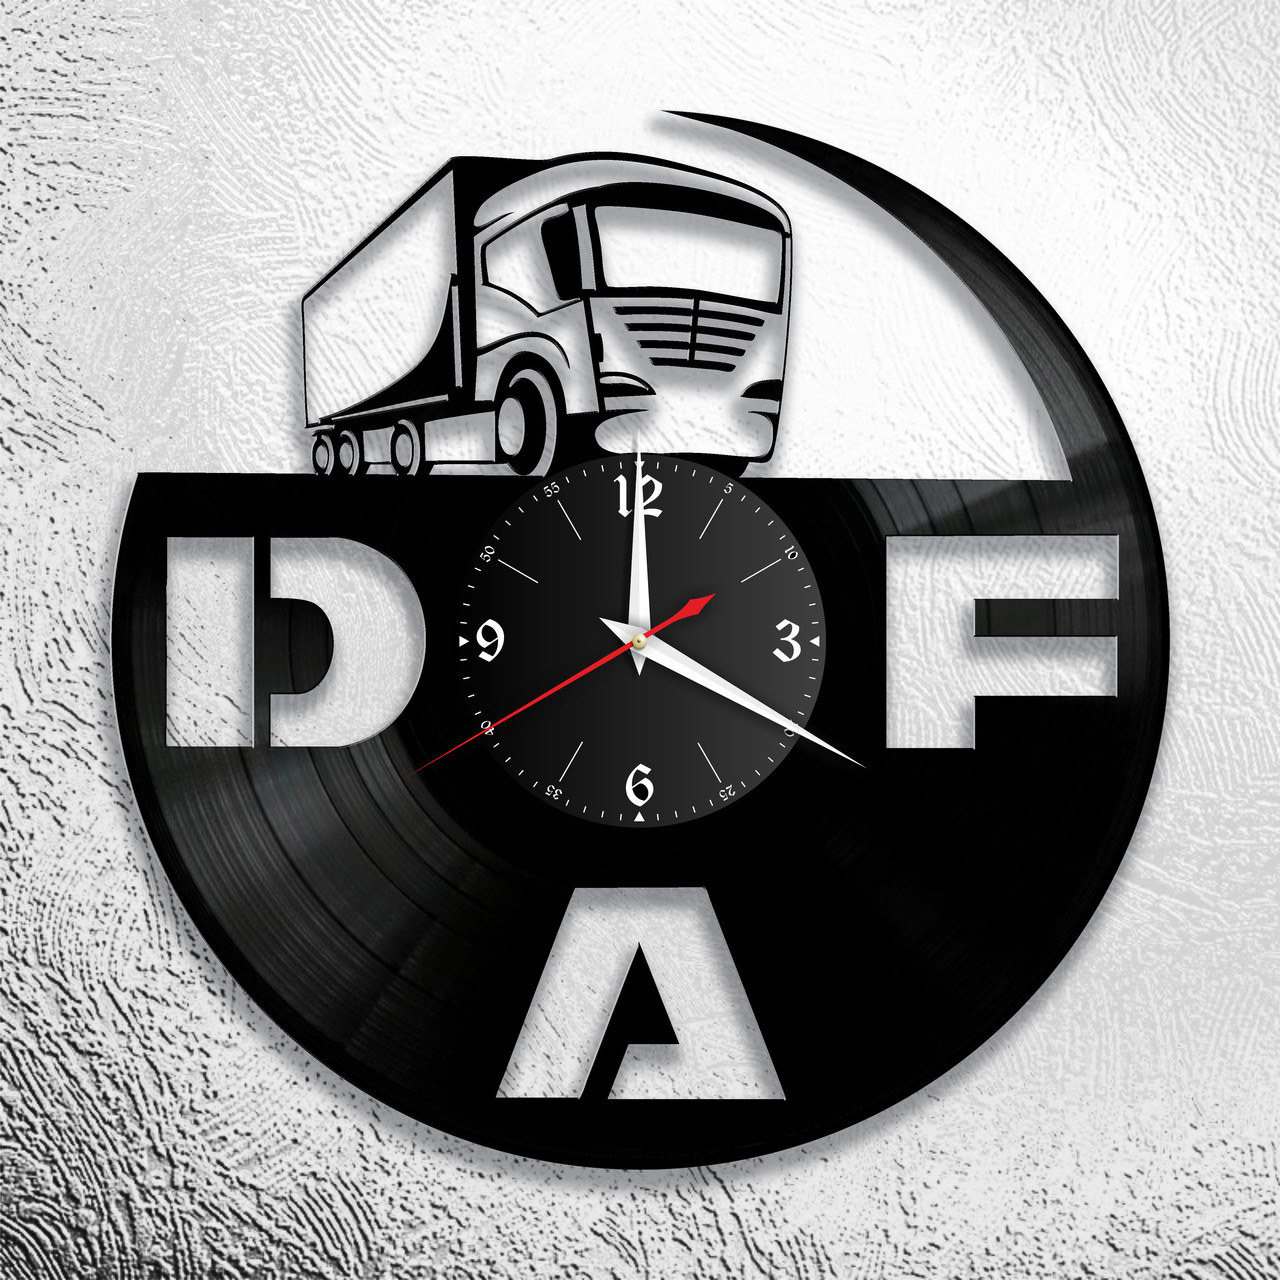 Оригинальные часы из виниловых пластинок  "DAF" версия 1, фото 1